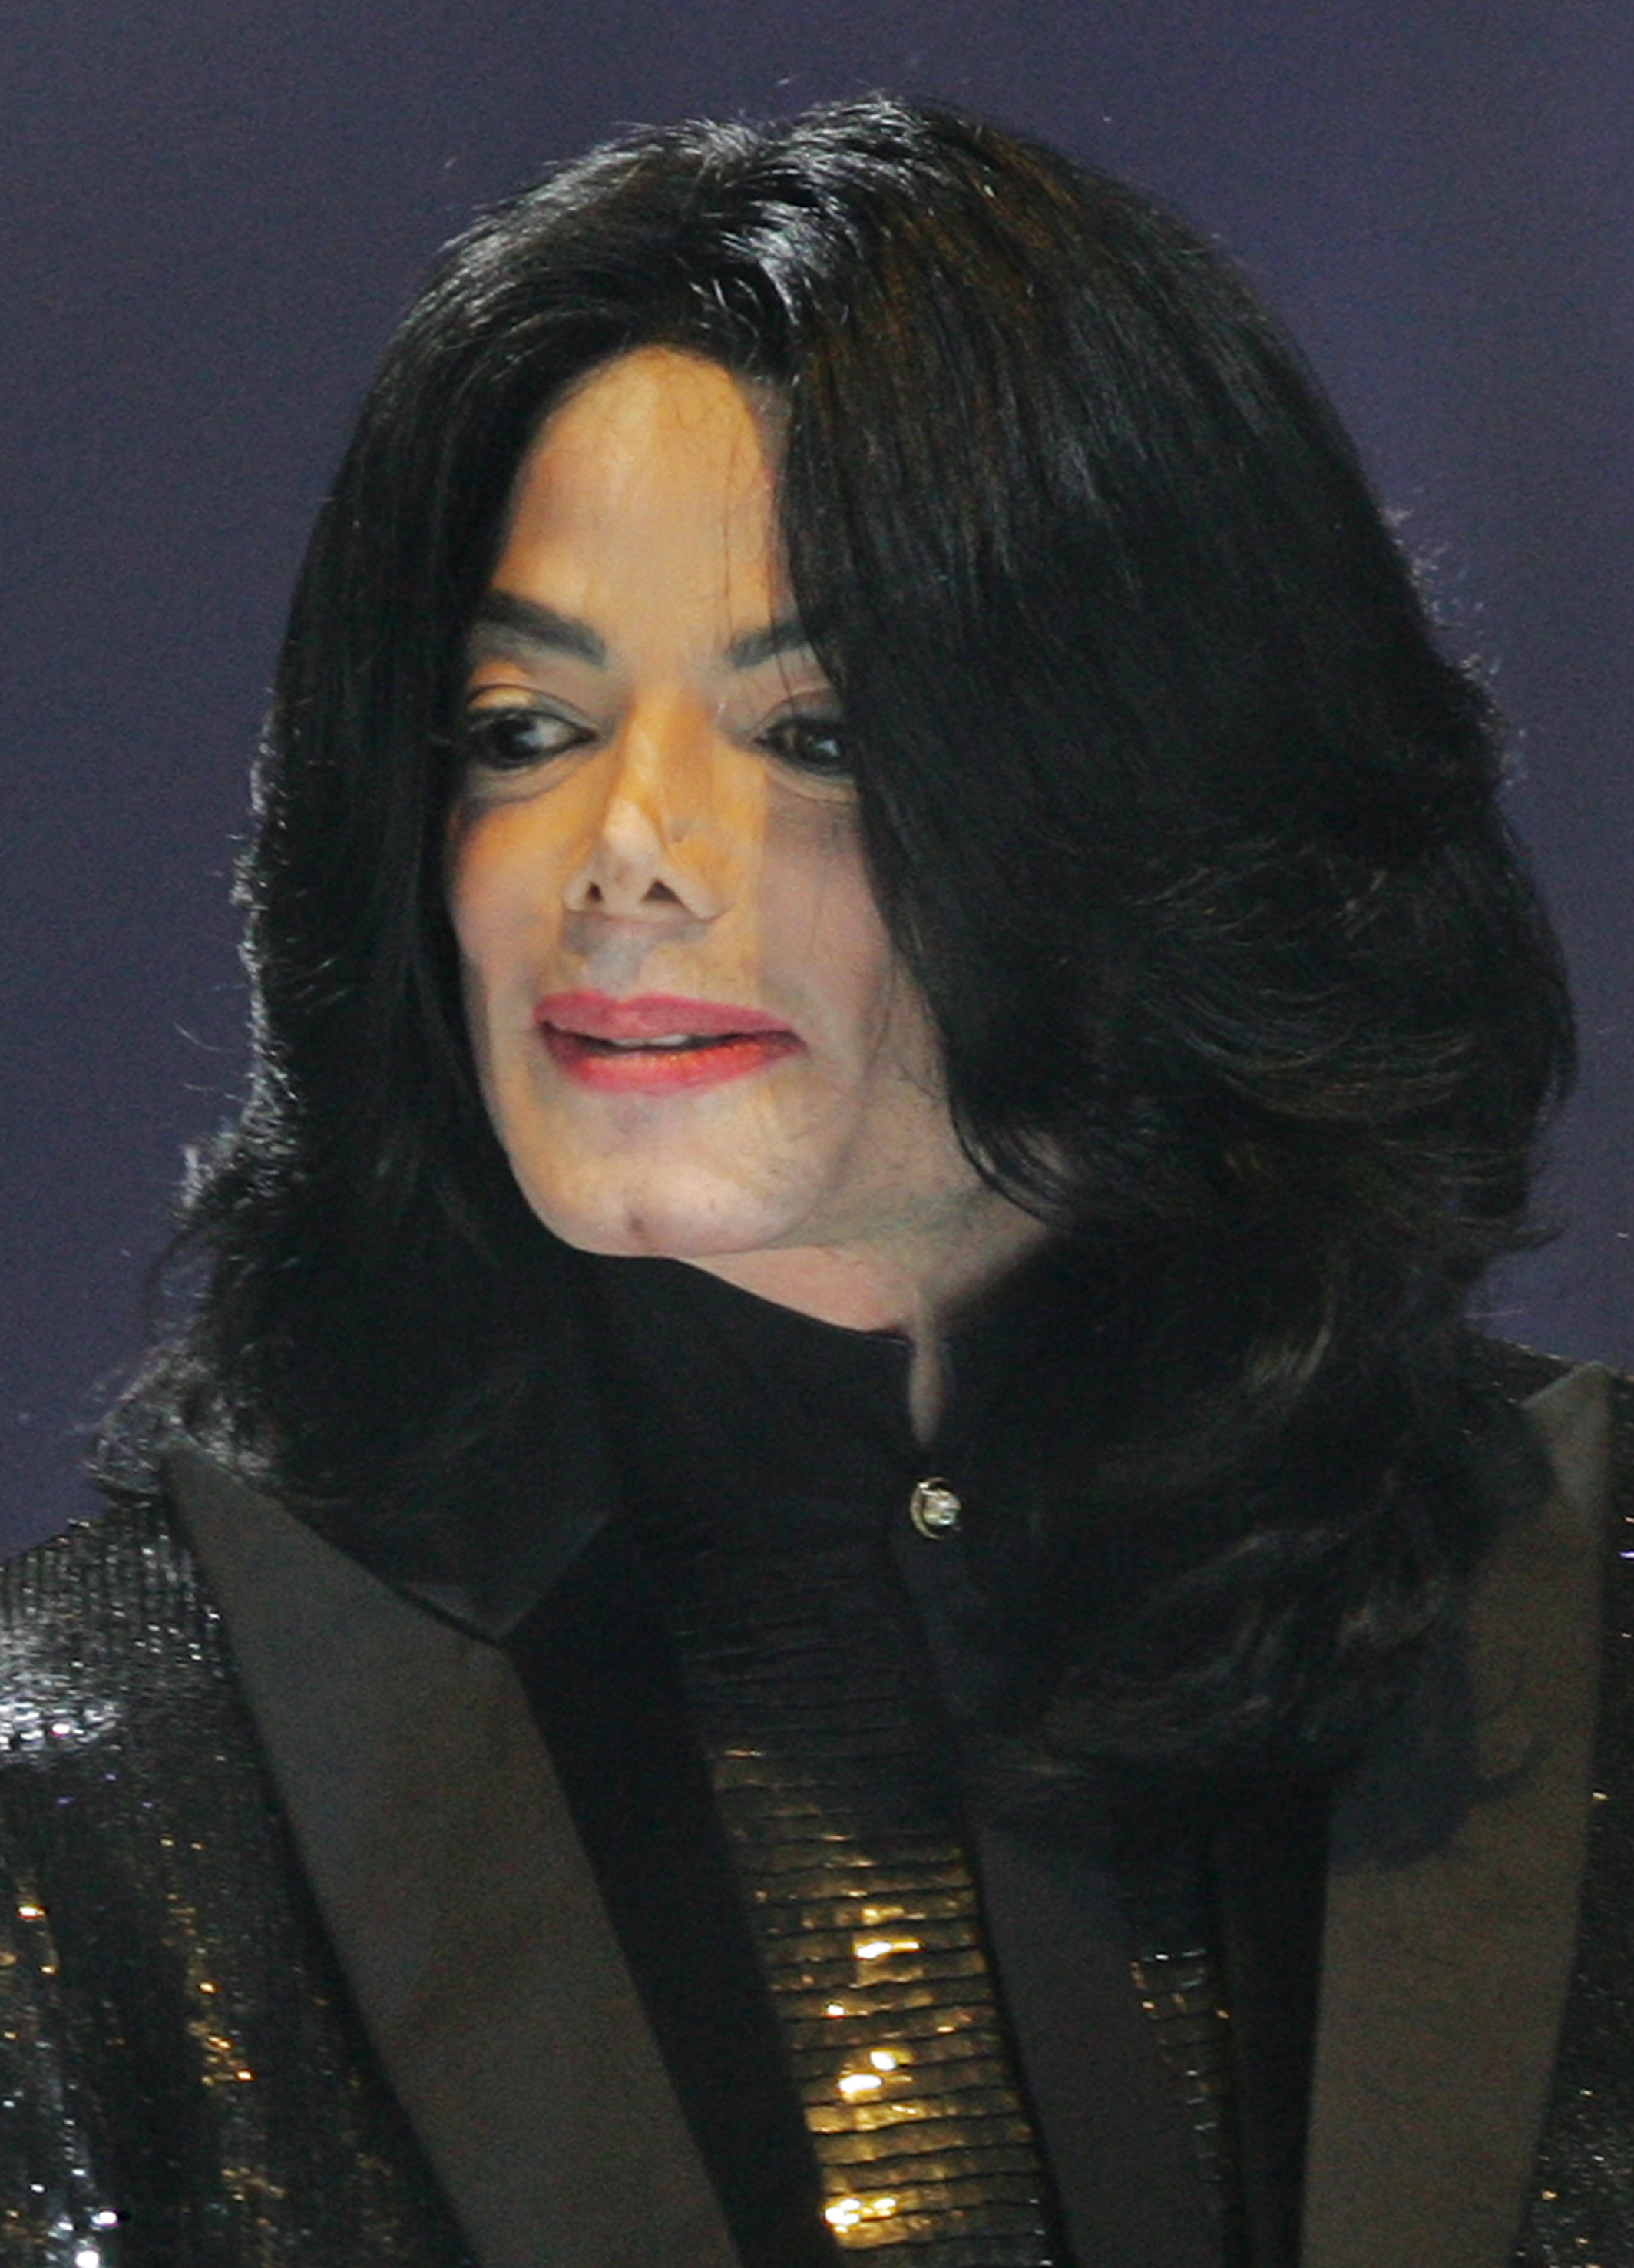 Michael Jackson en 2006 | Source : Getty Images